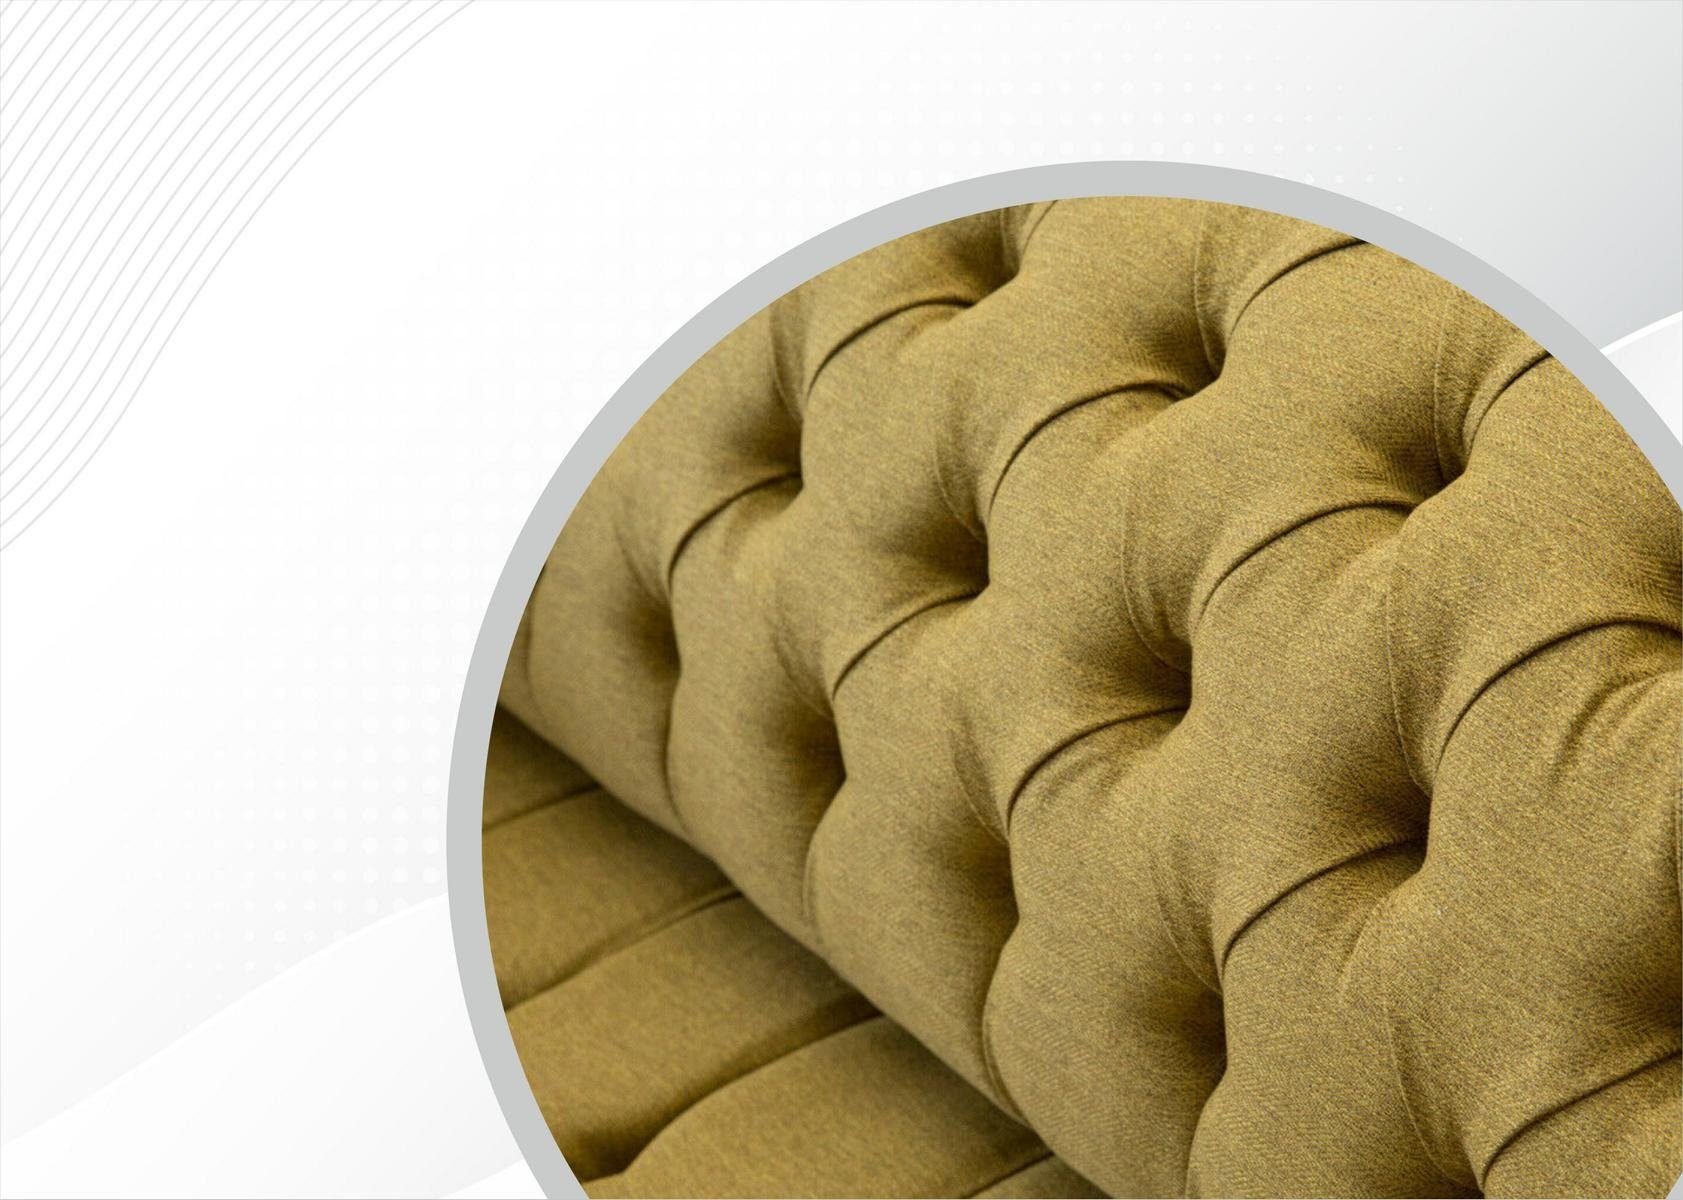 Europe Design, Dreisitzer Senf Made Chesterfield luxus Chesterfield-Sofa in modernes farbiger JVmoebel